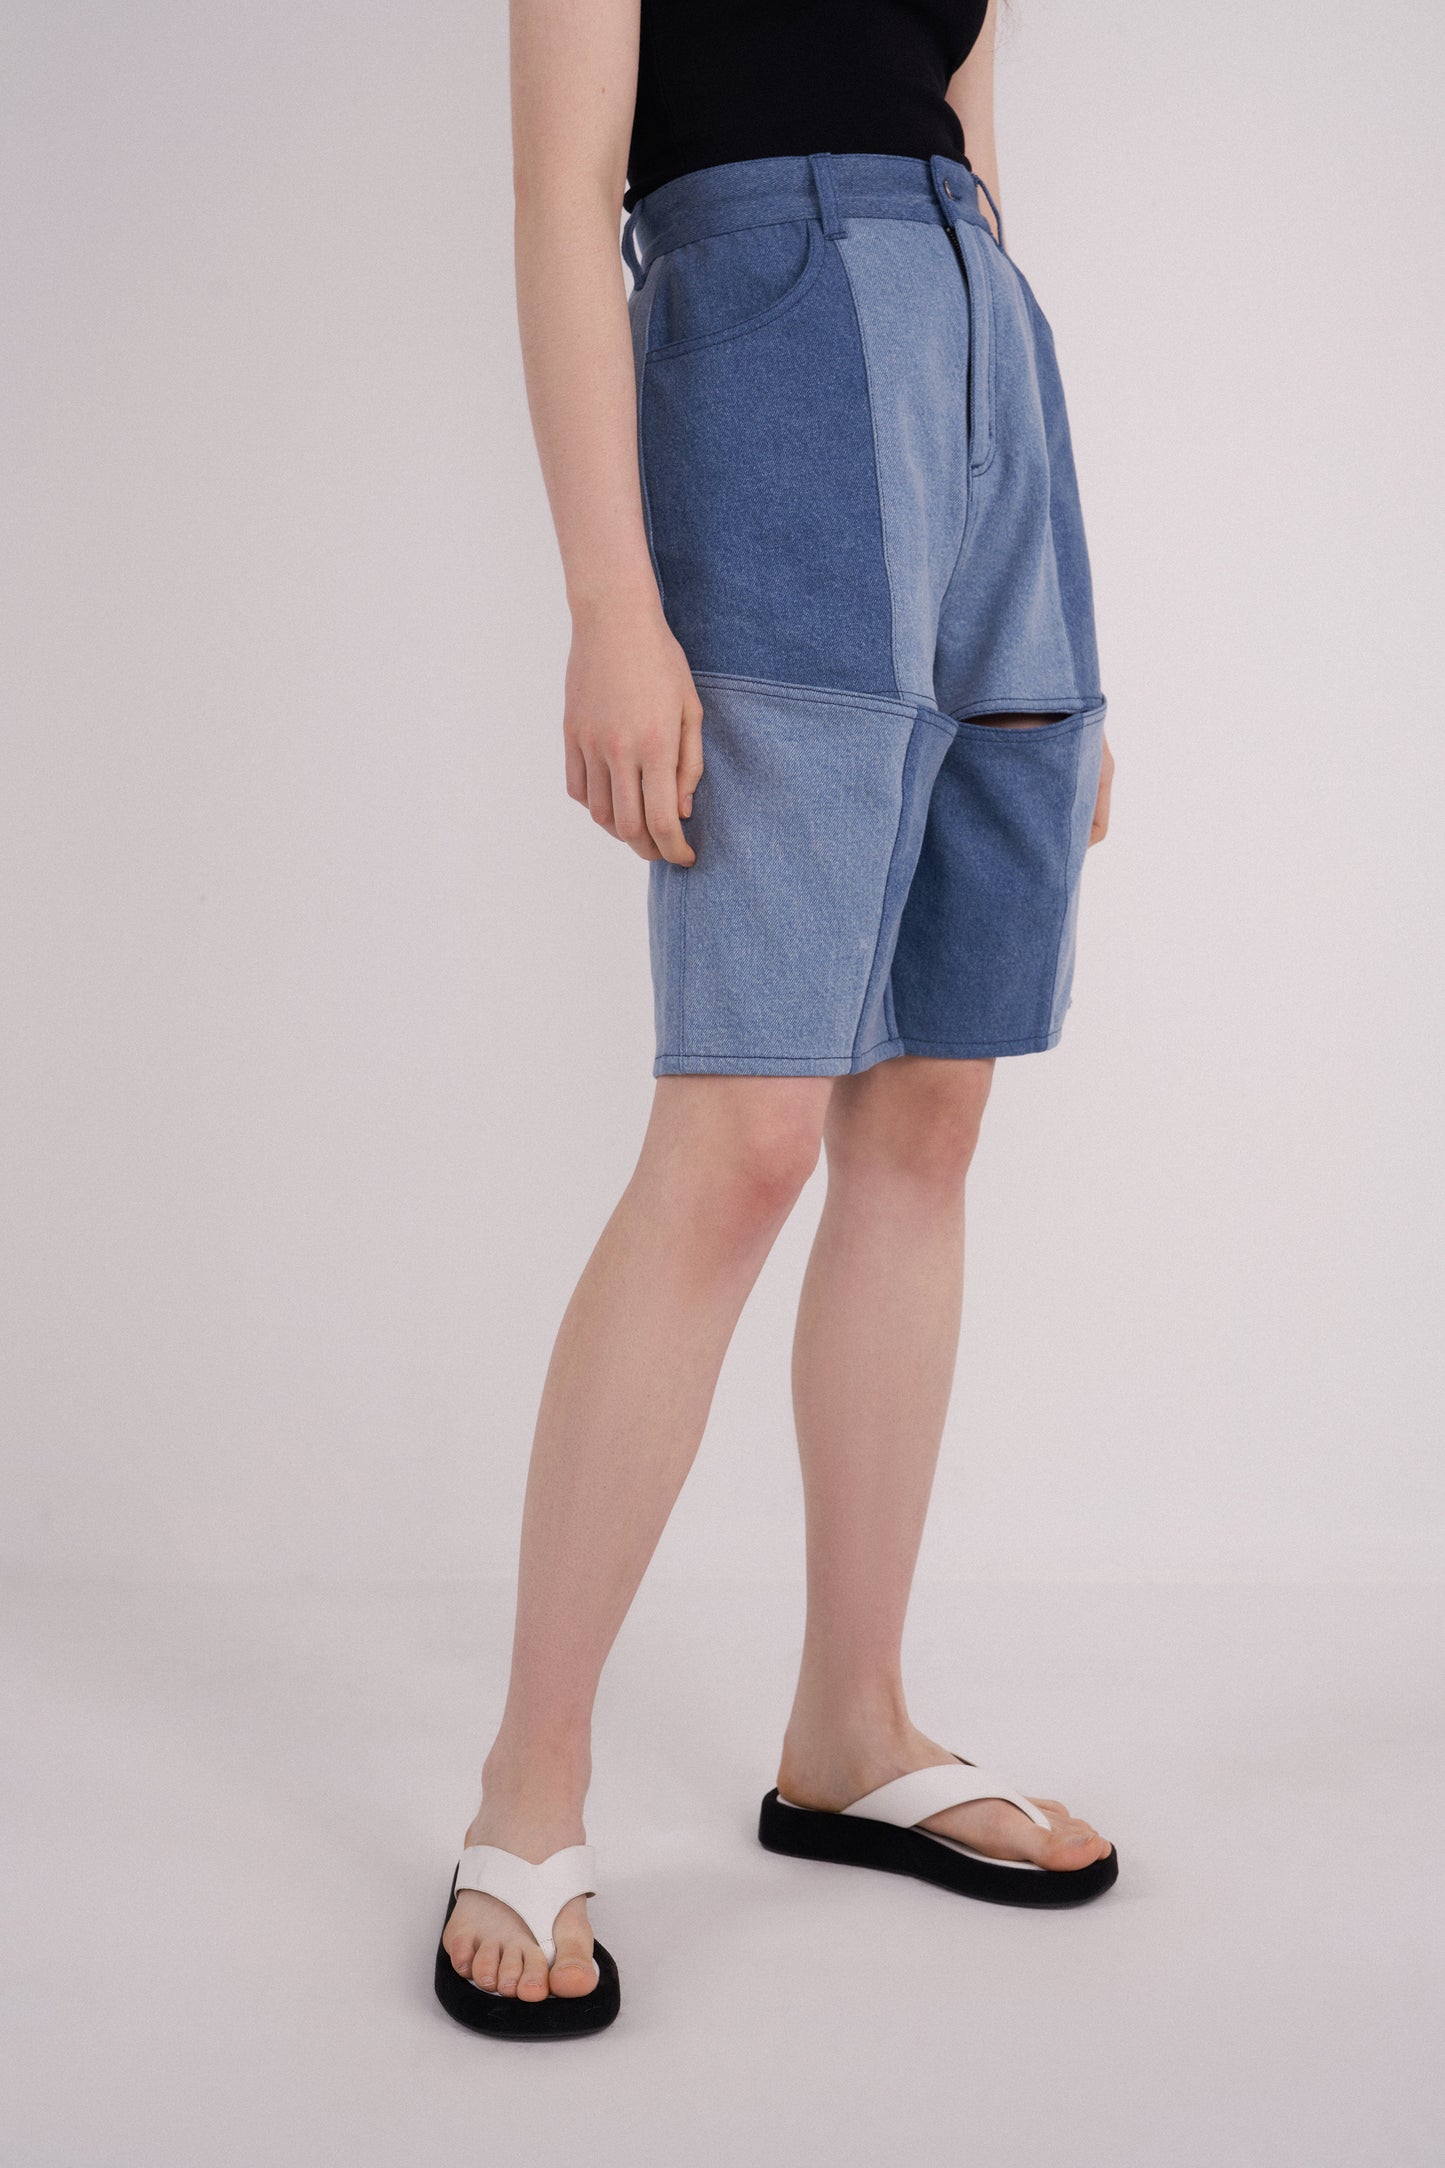 Wader Color Block Shorts in Washed Denim